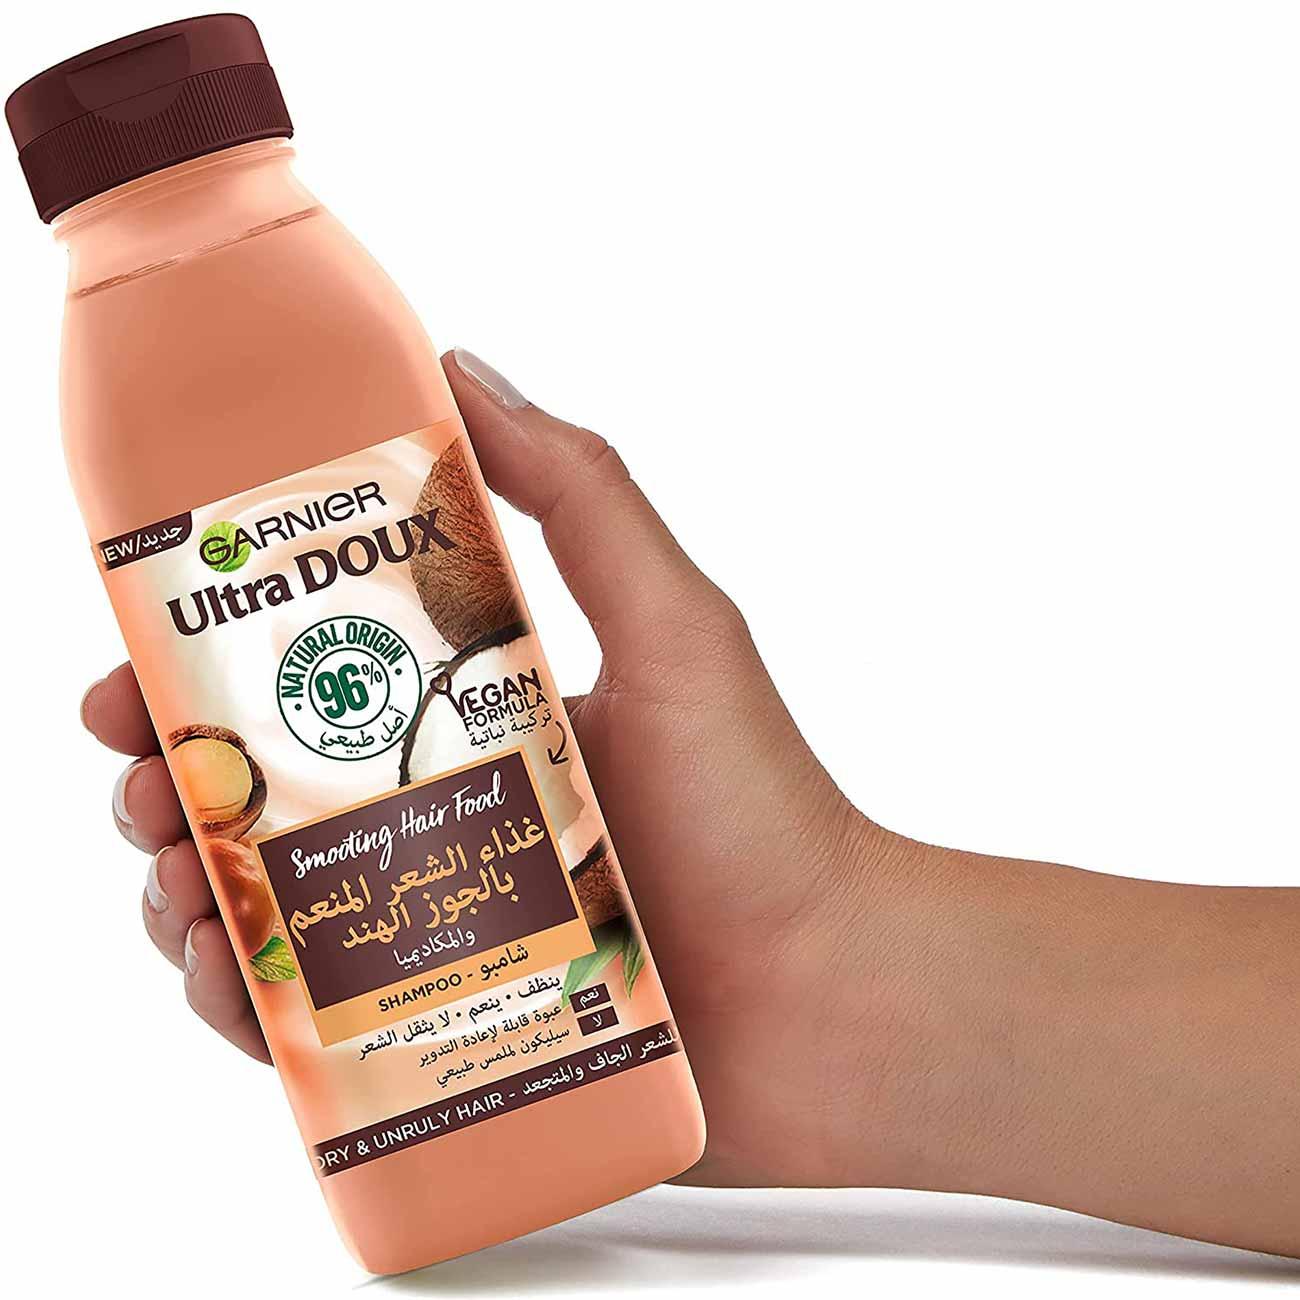 Nathydras Eco Ilumindor Shampoo Vegano Chá Branco e Camomila - Compre Aqui  Todos os Produtos com o Melhor Preço Já Visto na Web Frete Grátis e  Condições de Pgto Imperdiveis